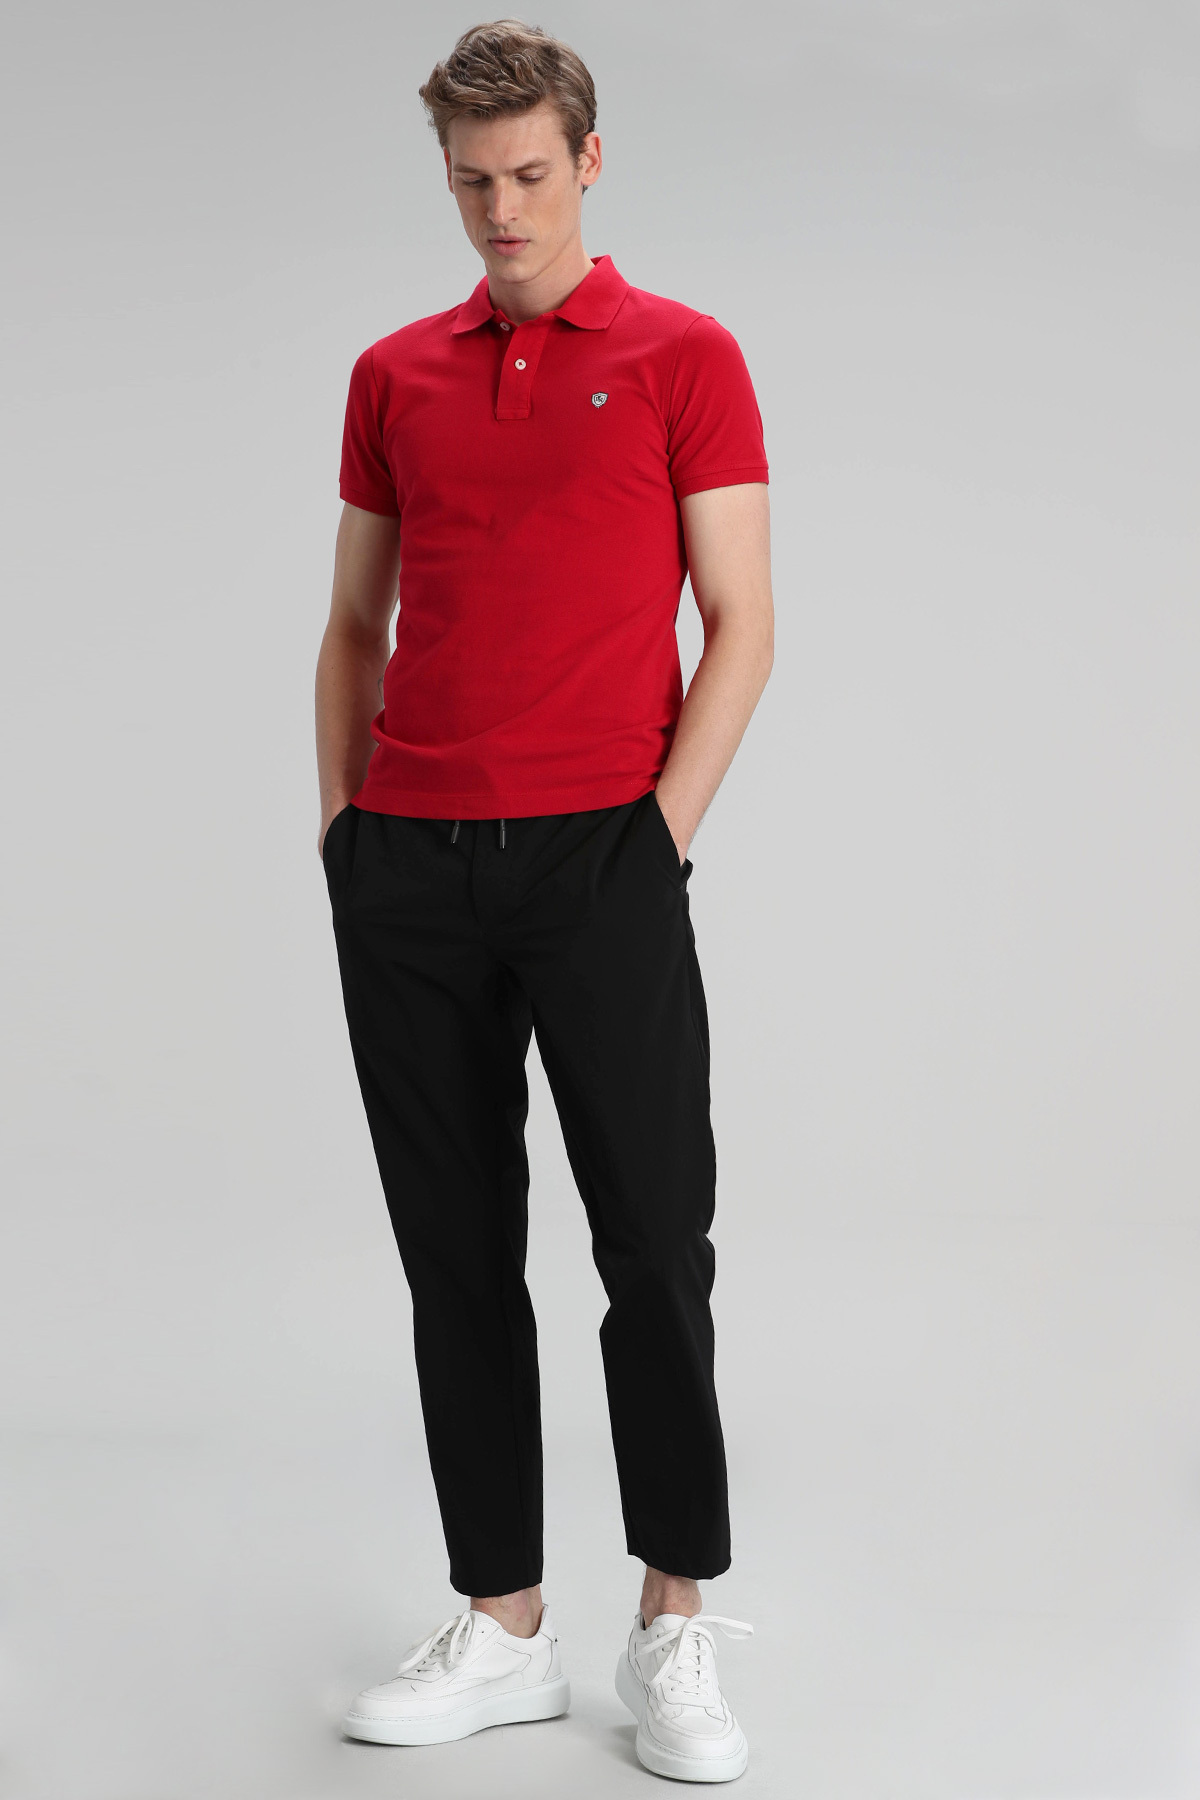 Laon Spor Polo Erkek Tişört Kırmızı